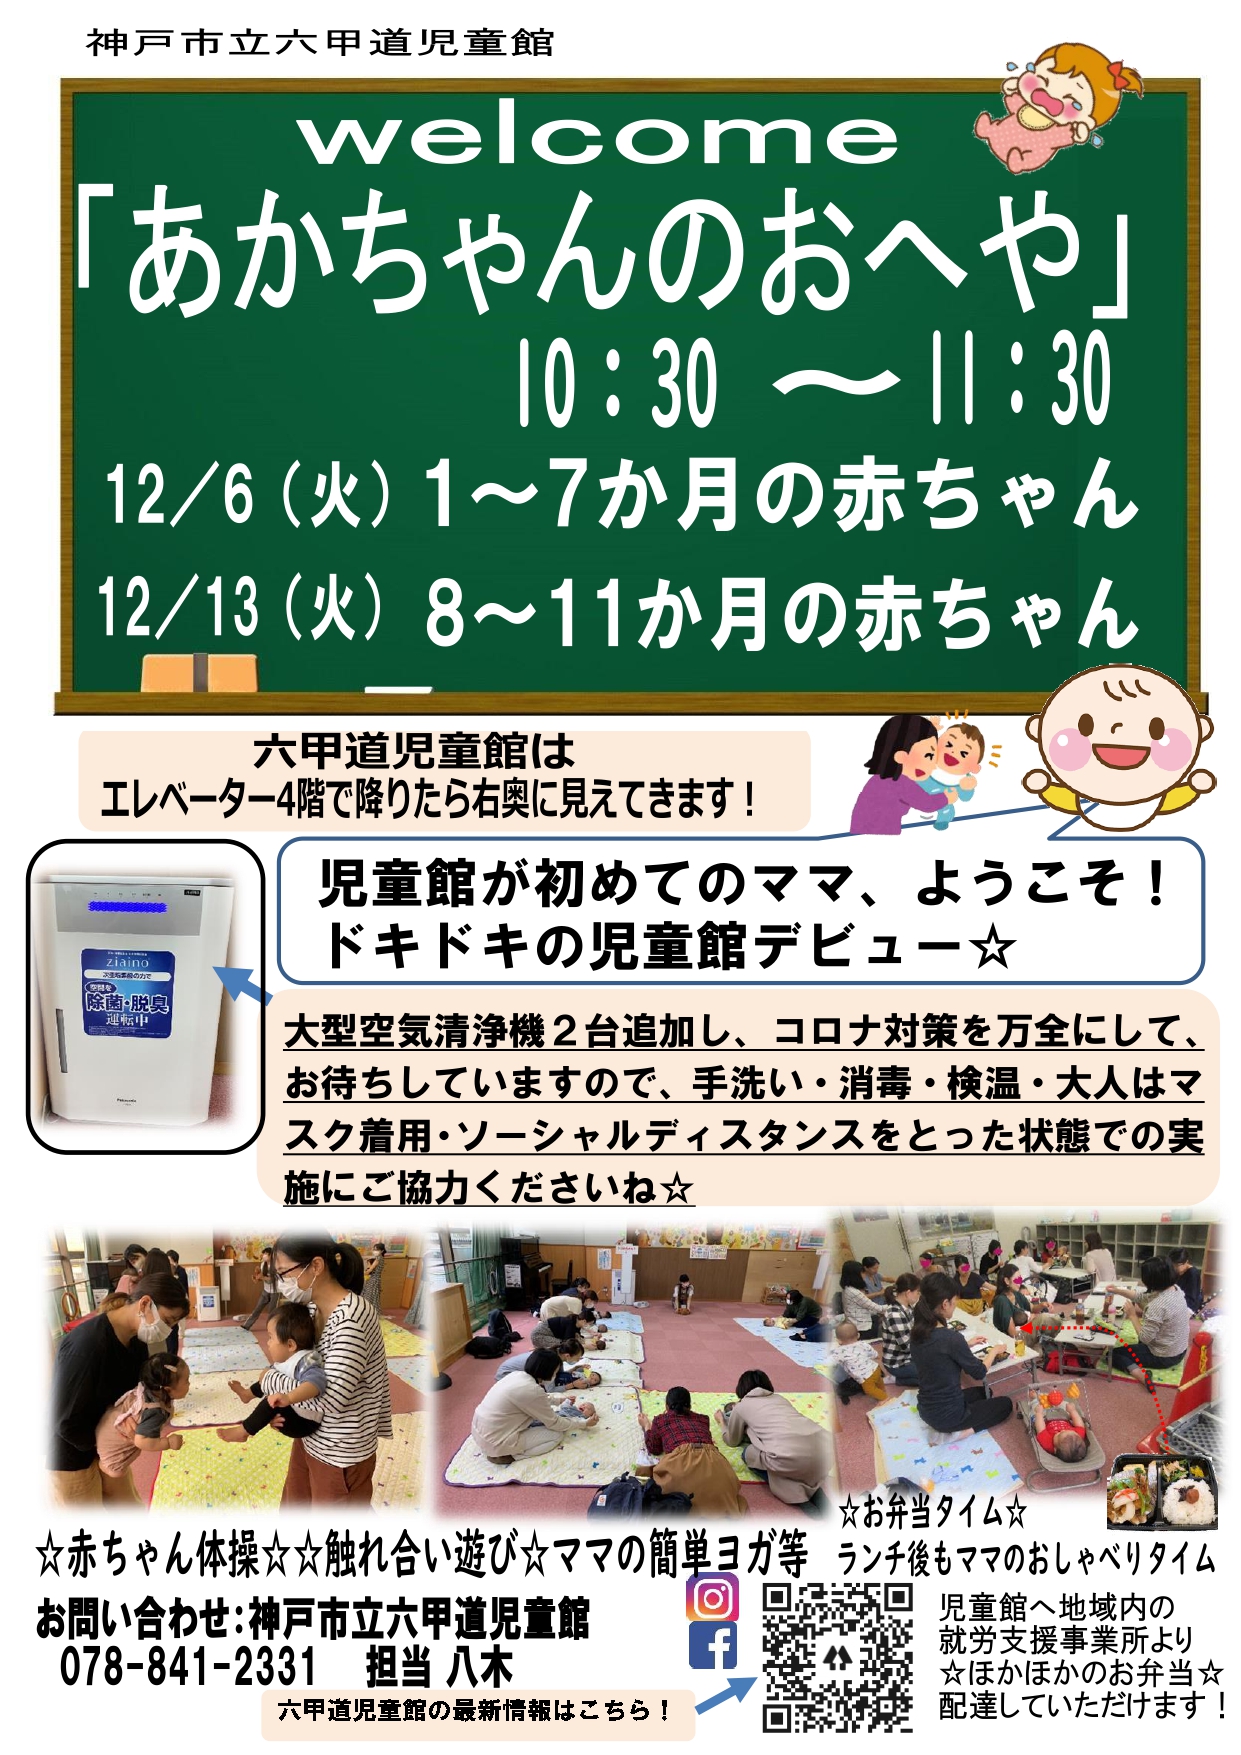 神戸市立六甲道児童館「あかちゃんのおへや」